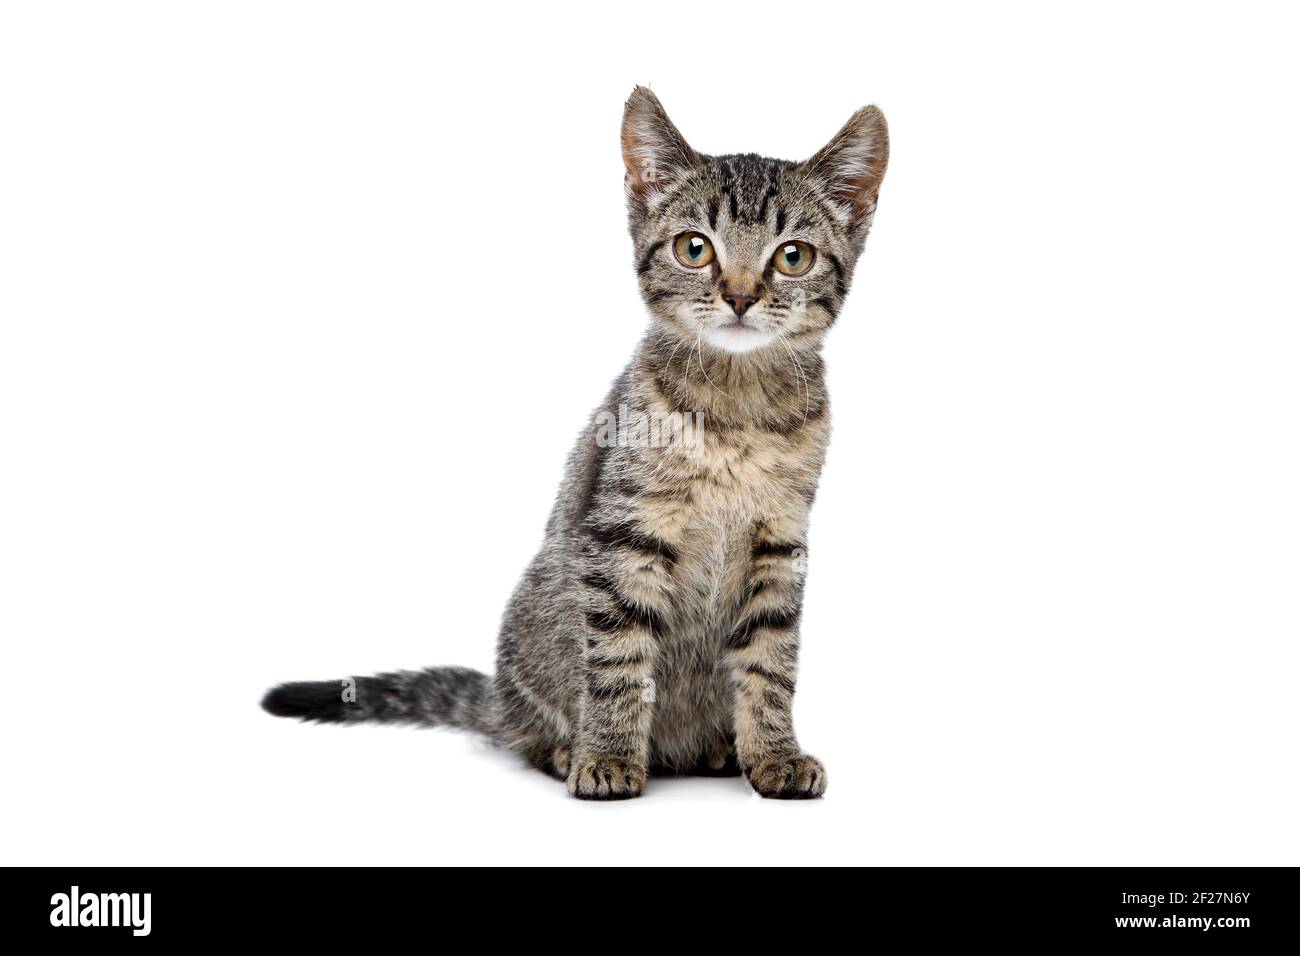 European shorthaired kitten Stock Photo